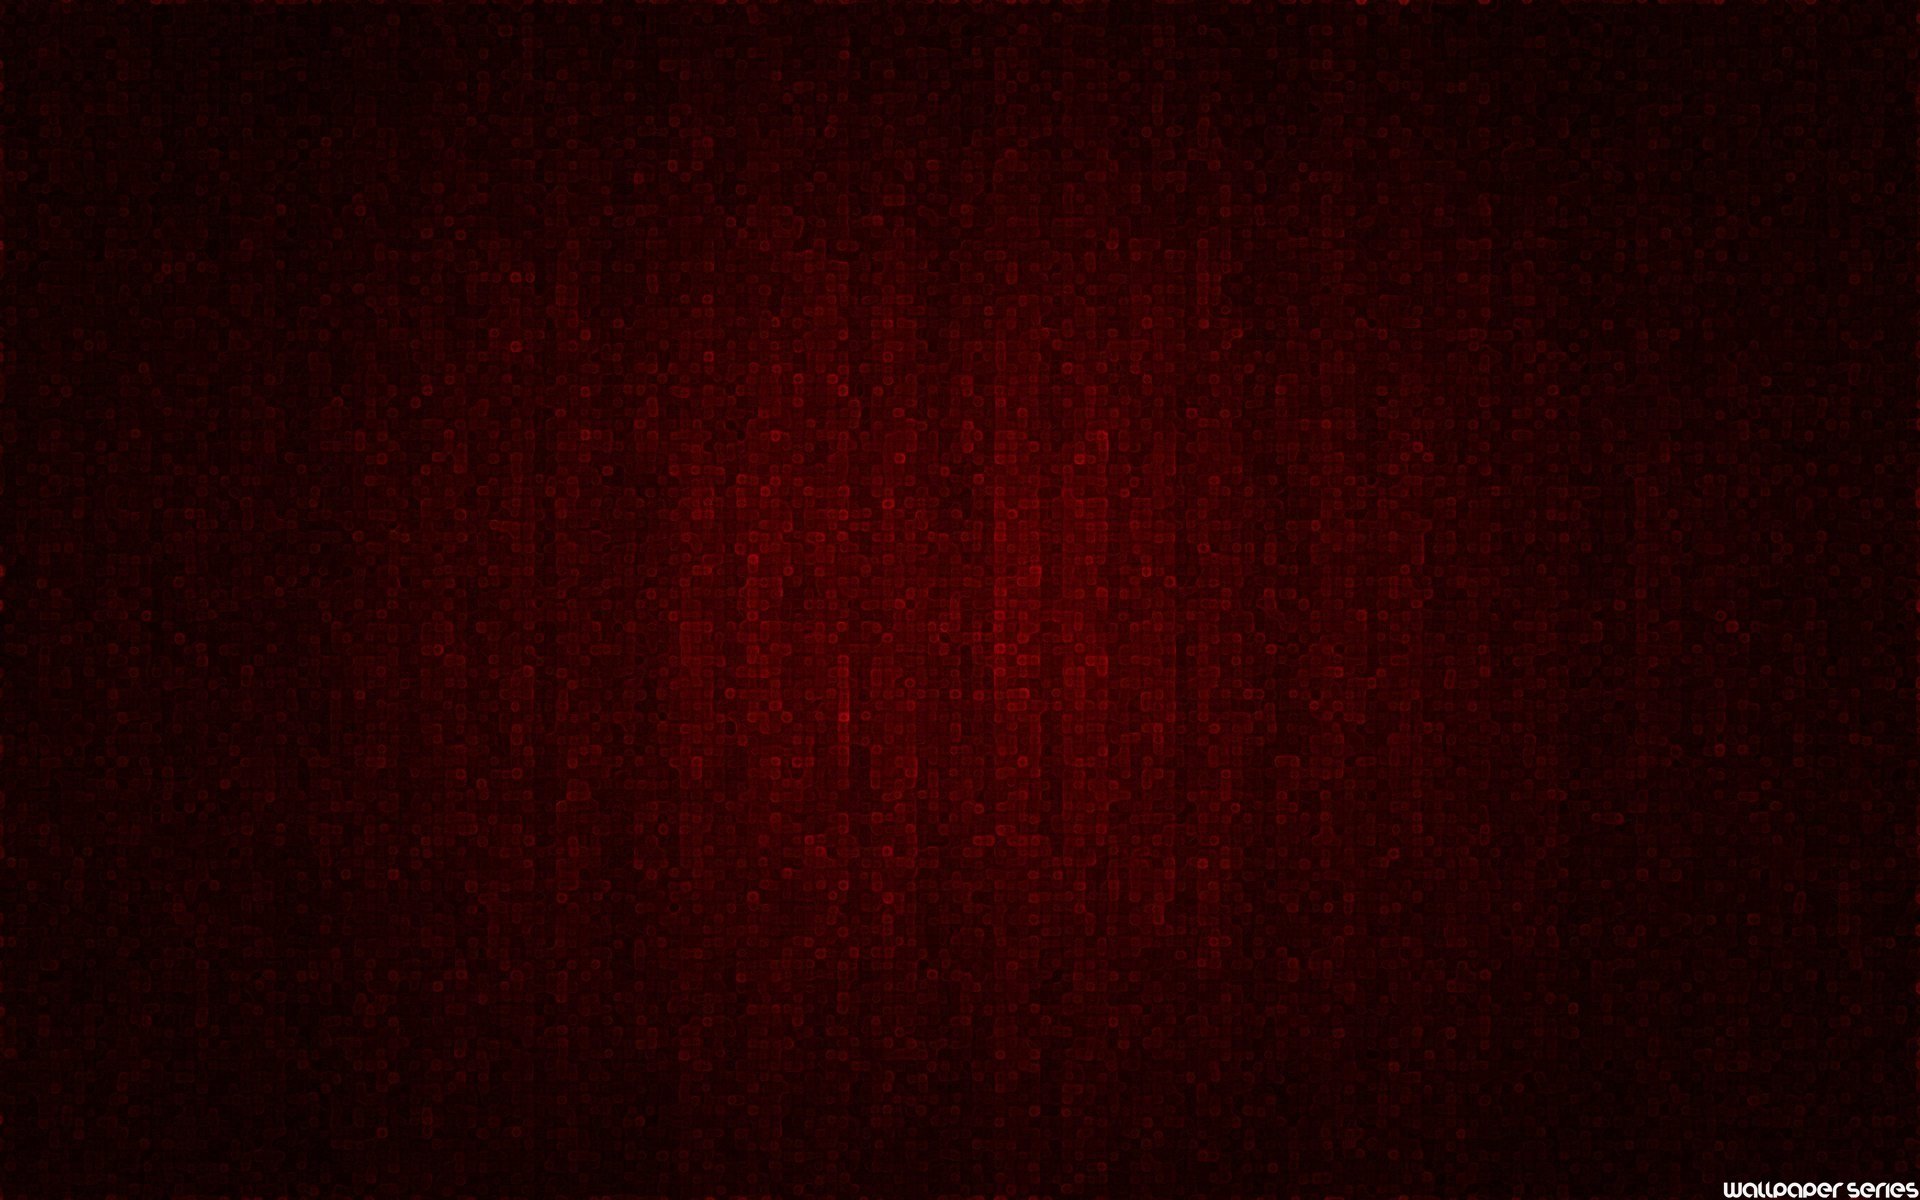 [73+] Dark Red Backgrounds | Wallpapersafari.com